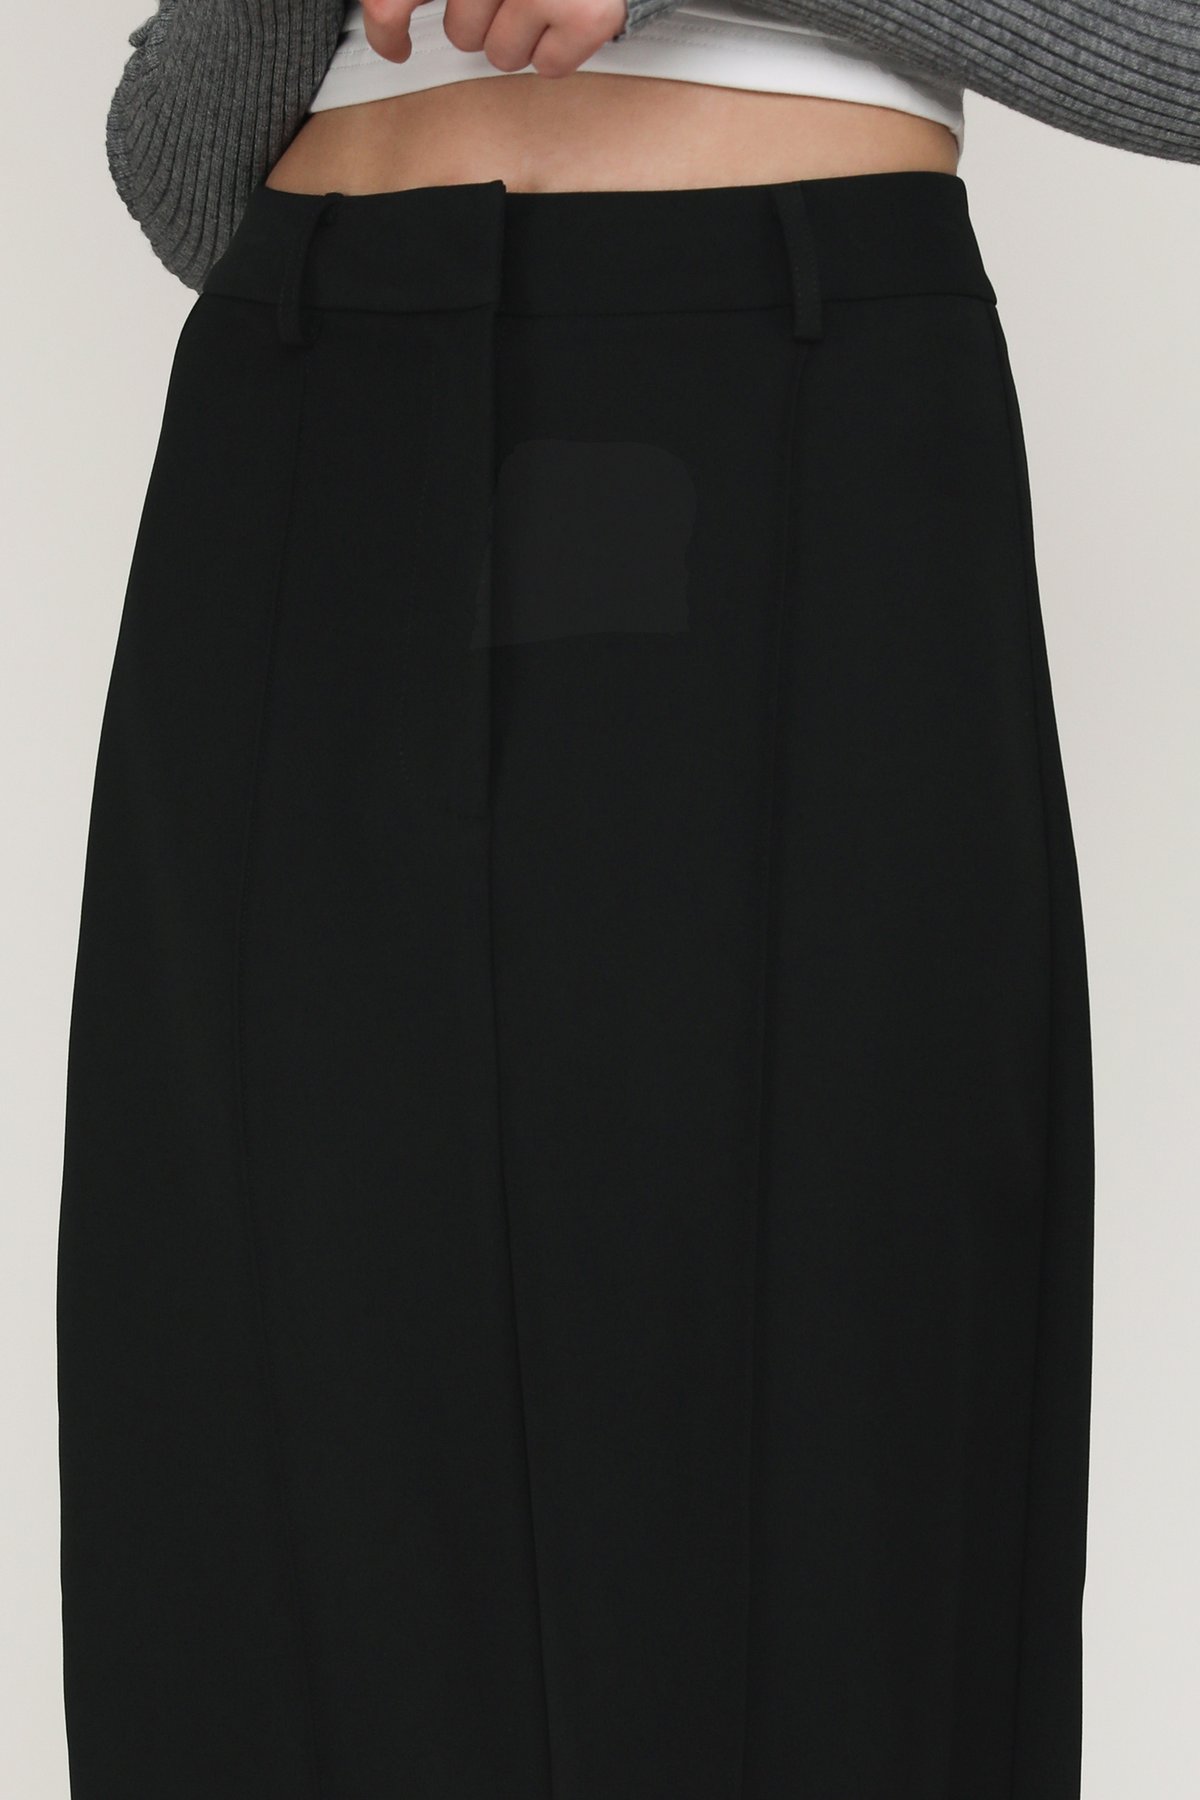 Dayne Column Maxi Skirt (Black)